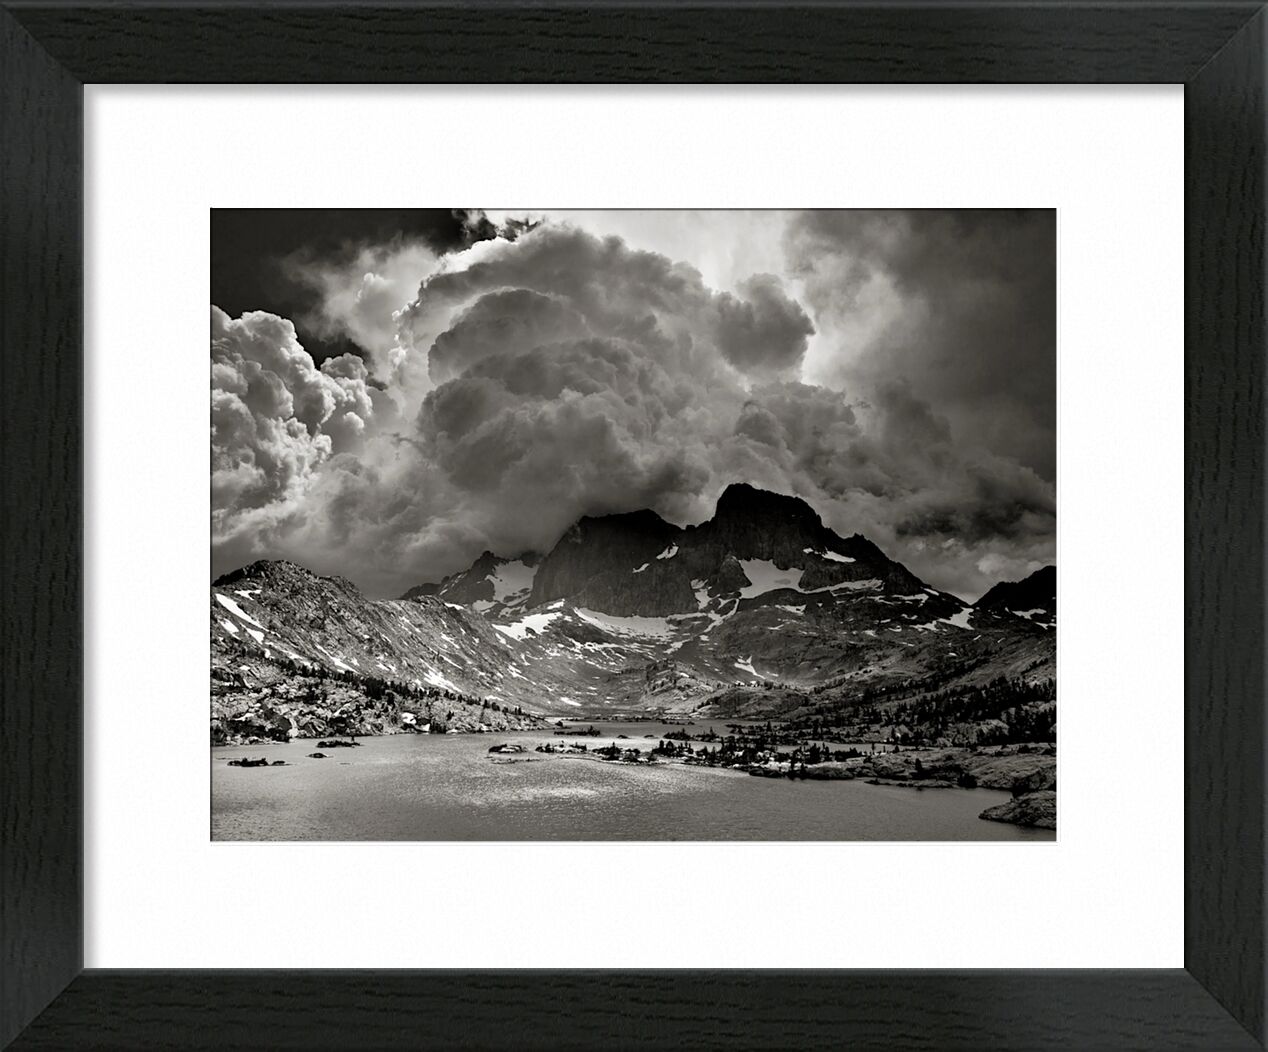 Garnet Lake, California - ANSEL ADAMS desde Bellas artes, Prodi Art, tormenta, América, Estados Unidos, California, ANSEL ADAMS, lago, montañas, nubes, bosque, árboles, árbol